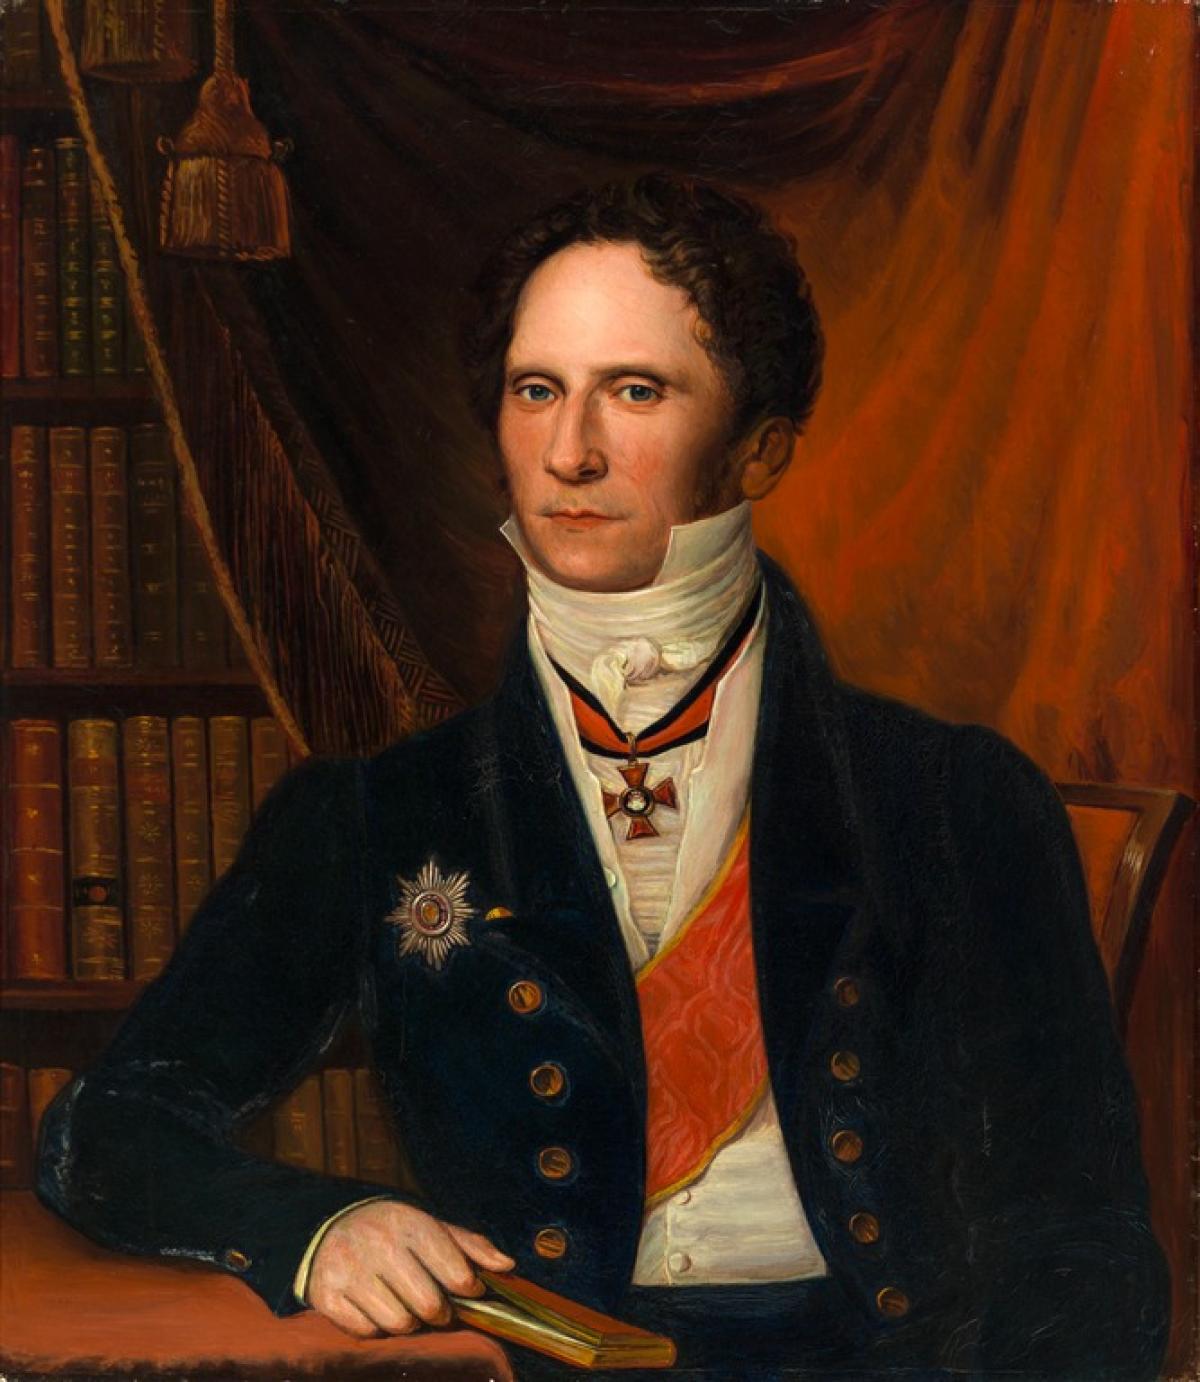 Porträttmålning av Carl Johan Walleen. Han är klädd i mörk kavaj vars bröst pryds av ett hederstecken. På den vita skjortan med hör krage hänger ett ordenstecken och ett orange band. 